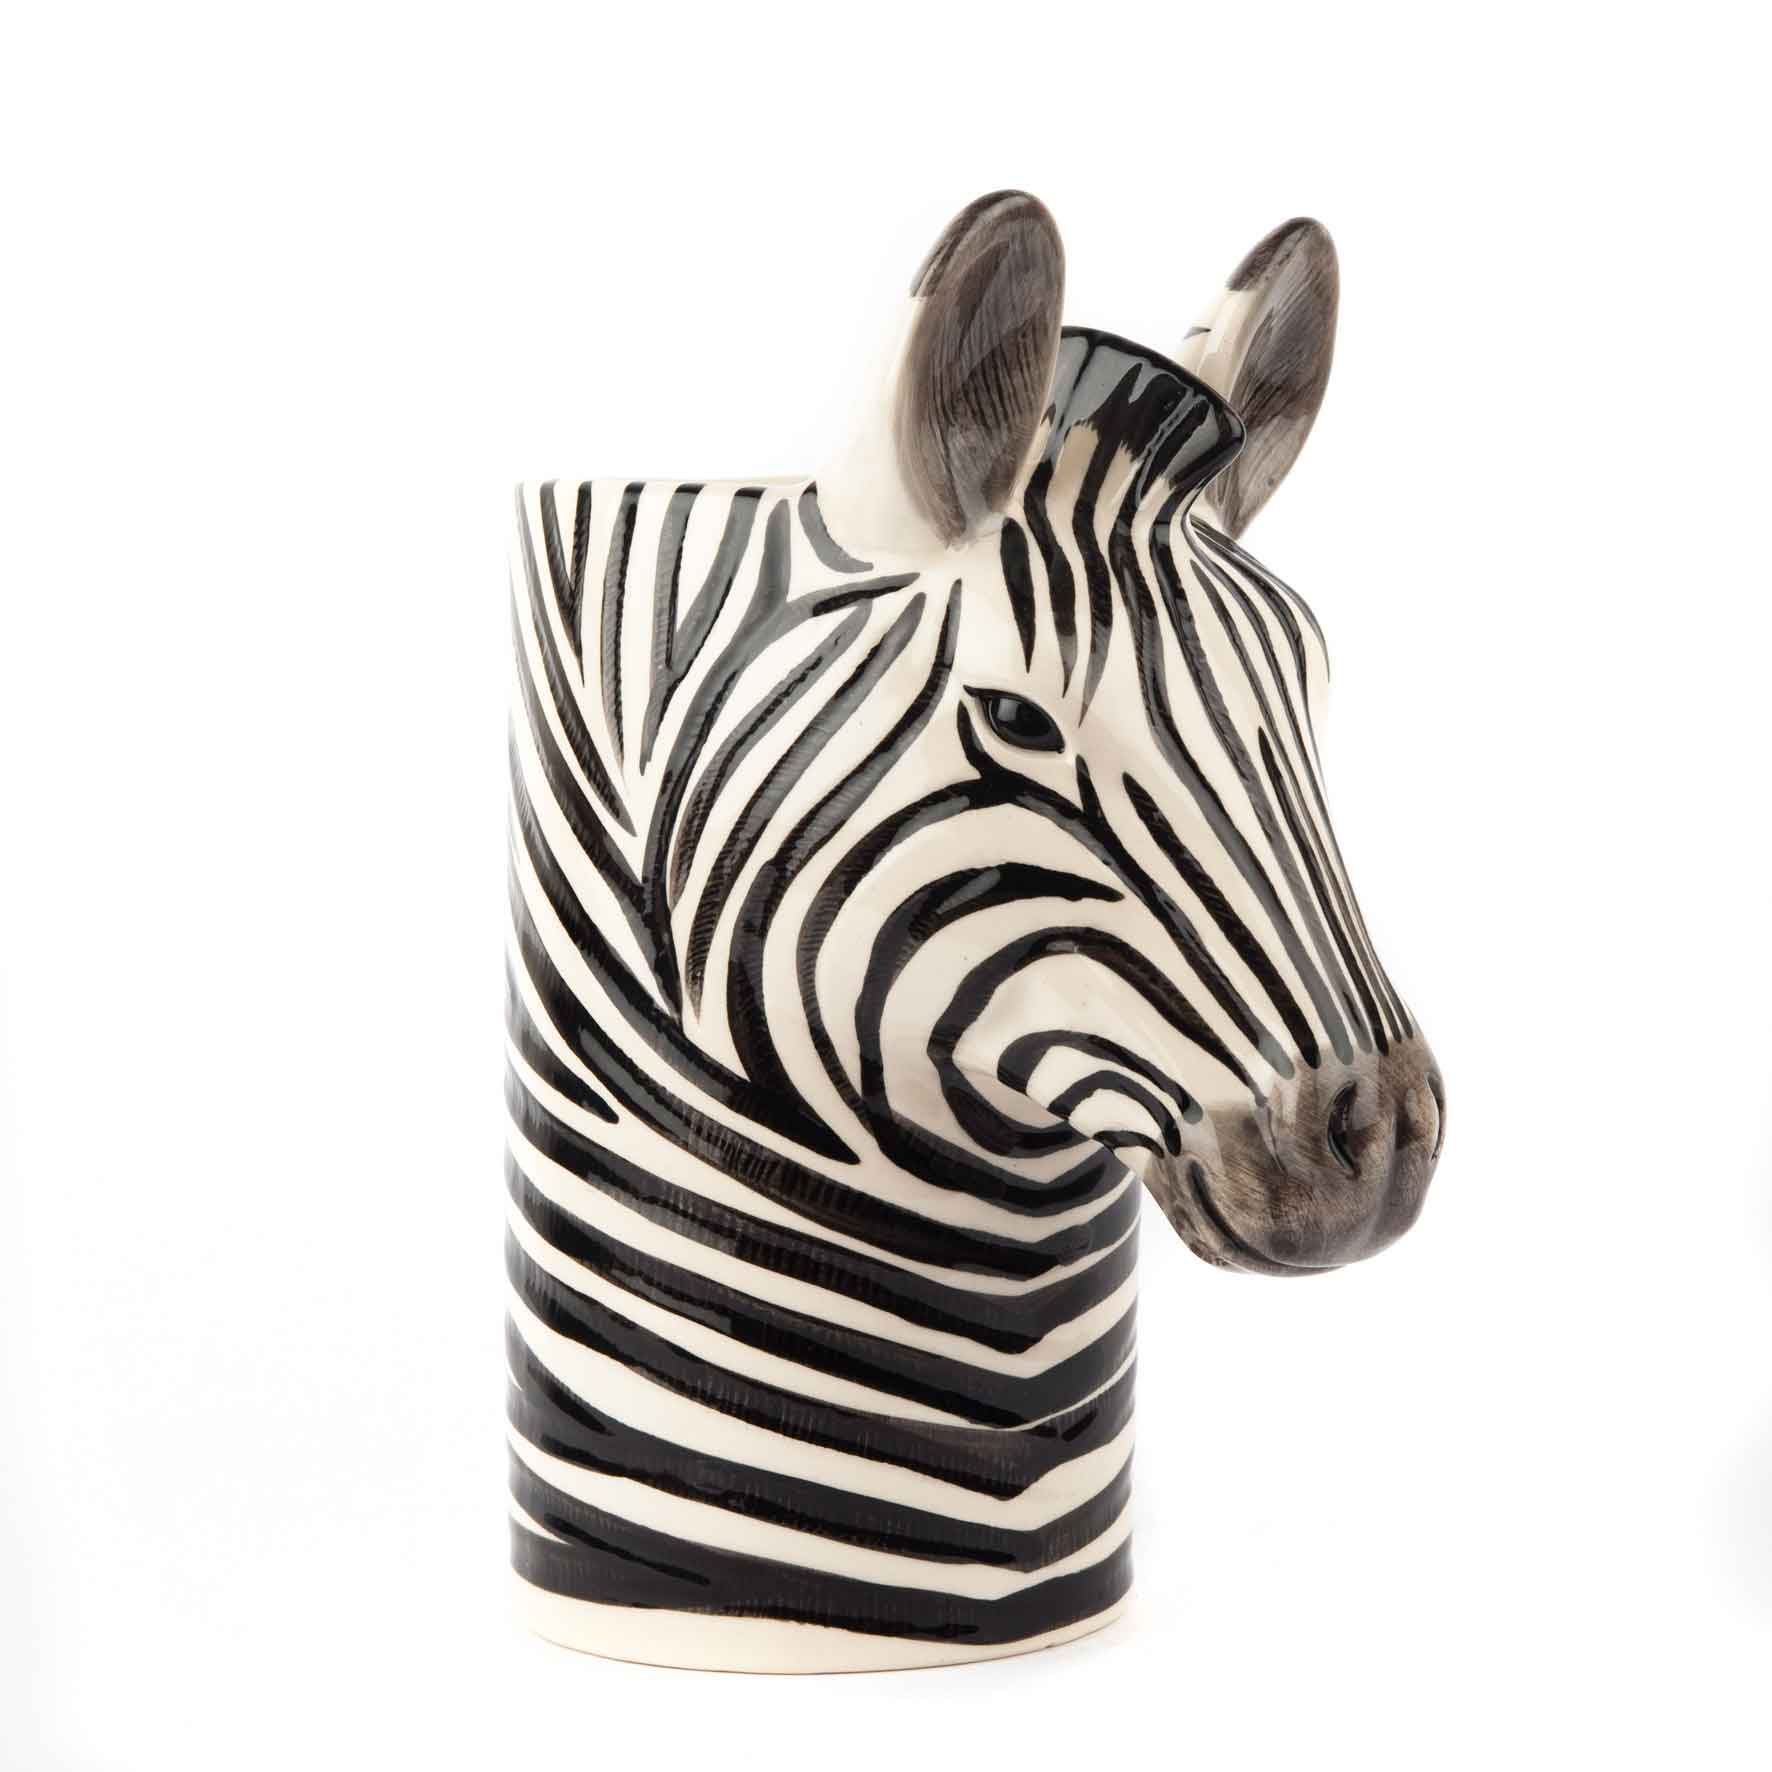 Utensilien Pot "Zebra" - von Quail Ceramics